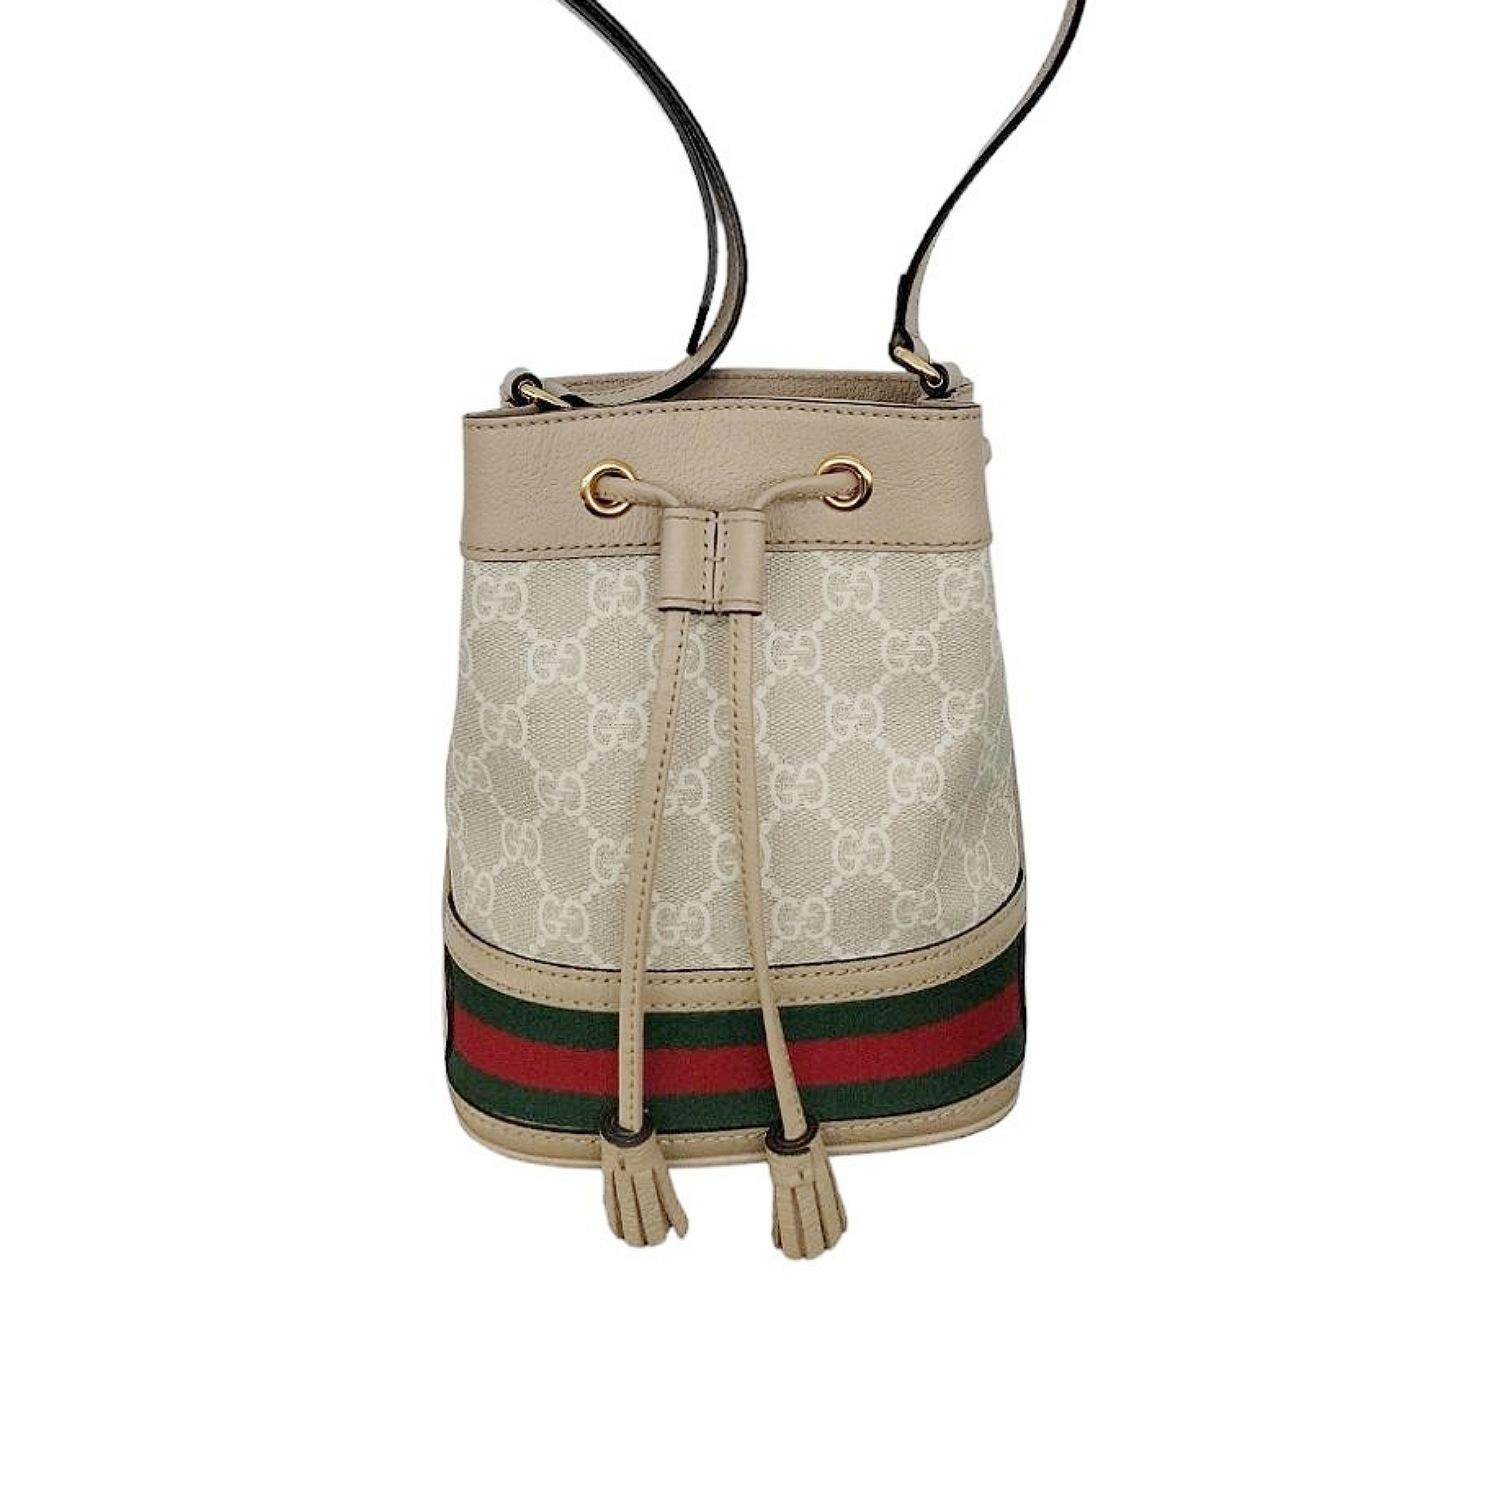 Gucci GG Supreme Mini Ophidia Beuteltasche. Sie ist aus beigem und weißem GG Supreme Canvas und hafermehlfarbenem Leder mit grünem und rotem Webstreifen gefertigt. Sie hat goldfarbene Beschläge, einen Kordelzugverschluss, ein Leinenfutter aus